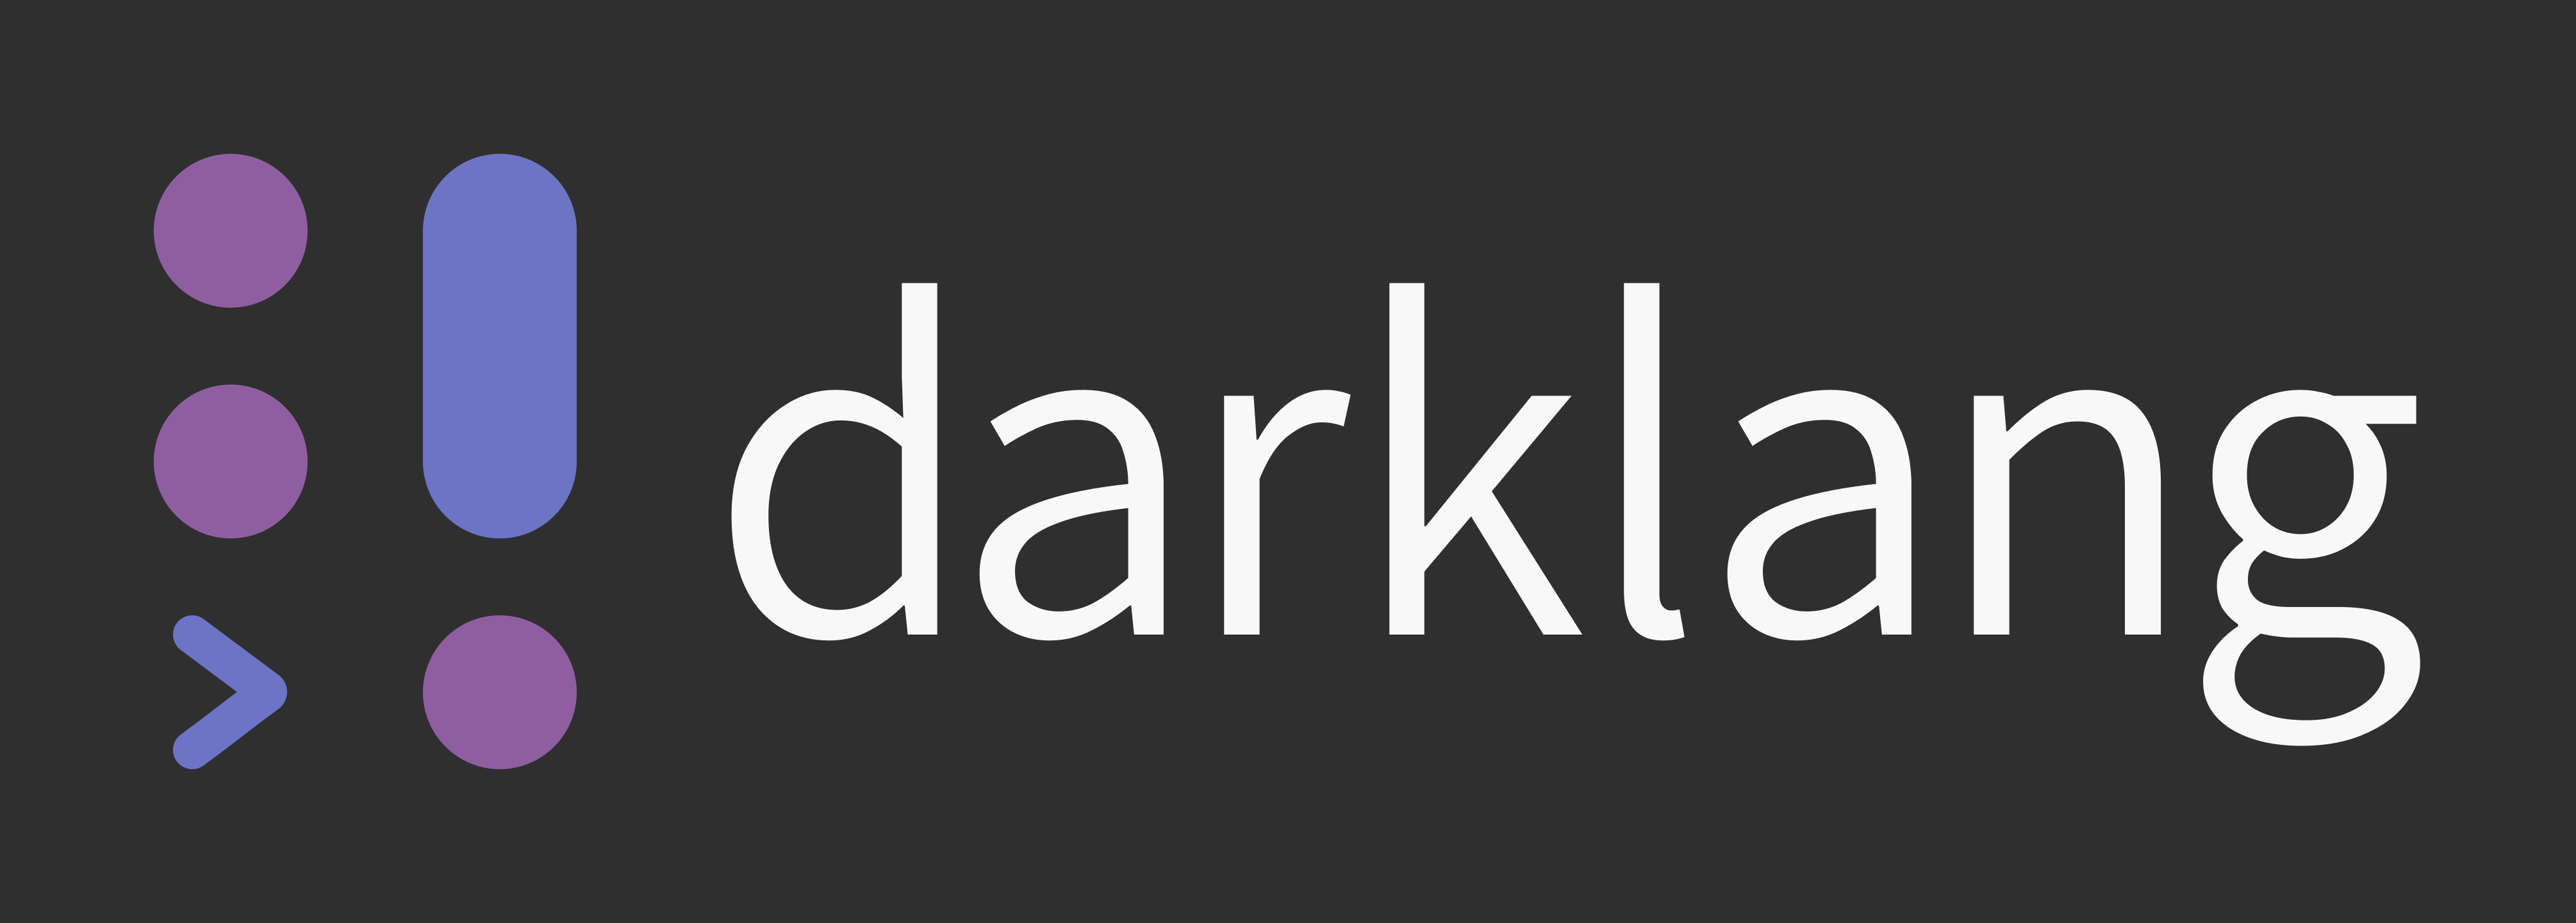 Darklang logo